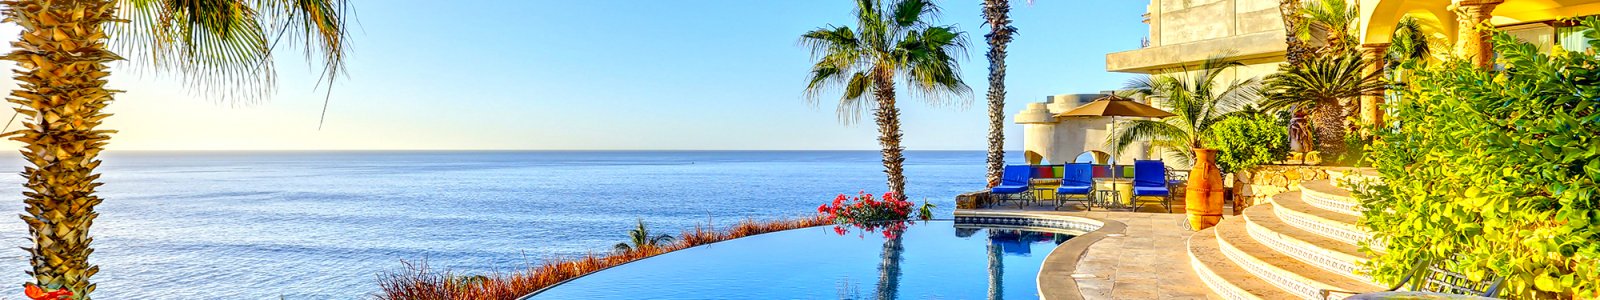 San Jose del Cabo Homes for Rent | Luxury Homes & Condos in Los Cabos